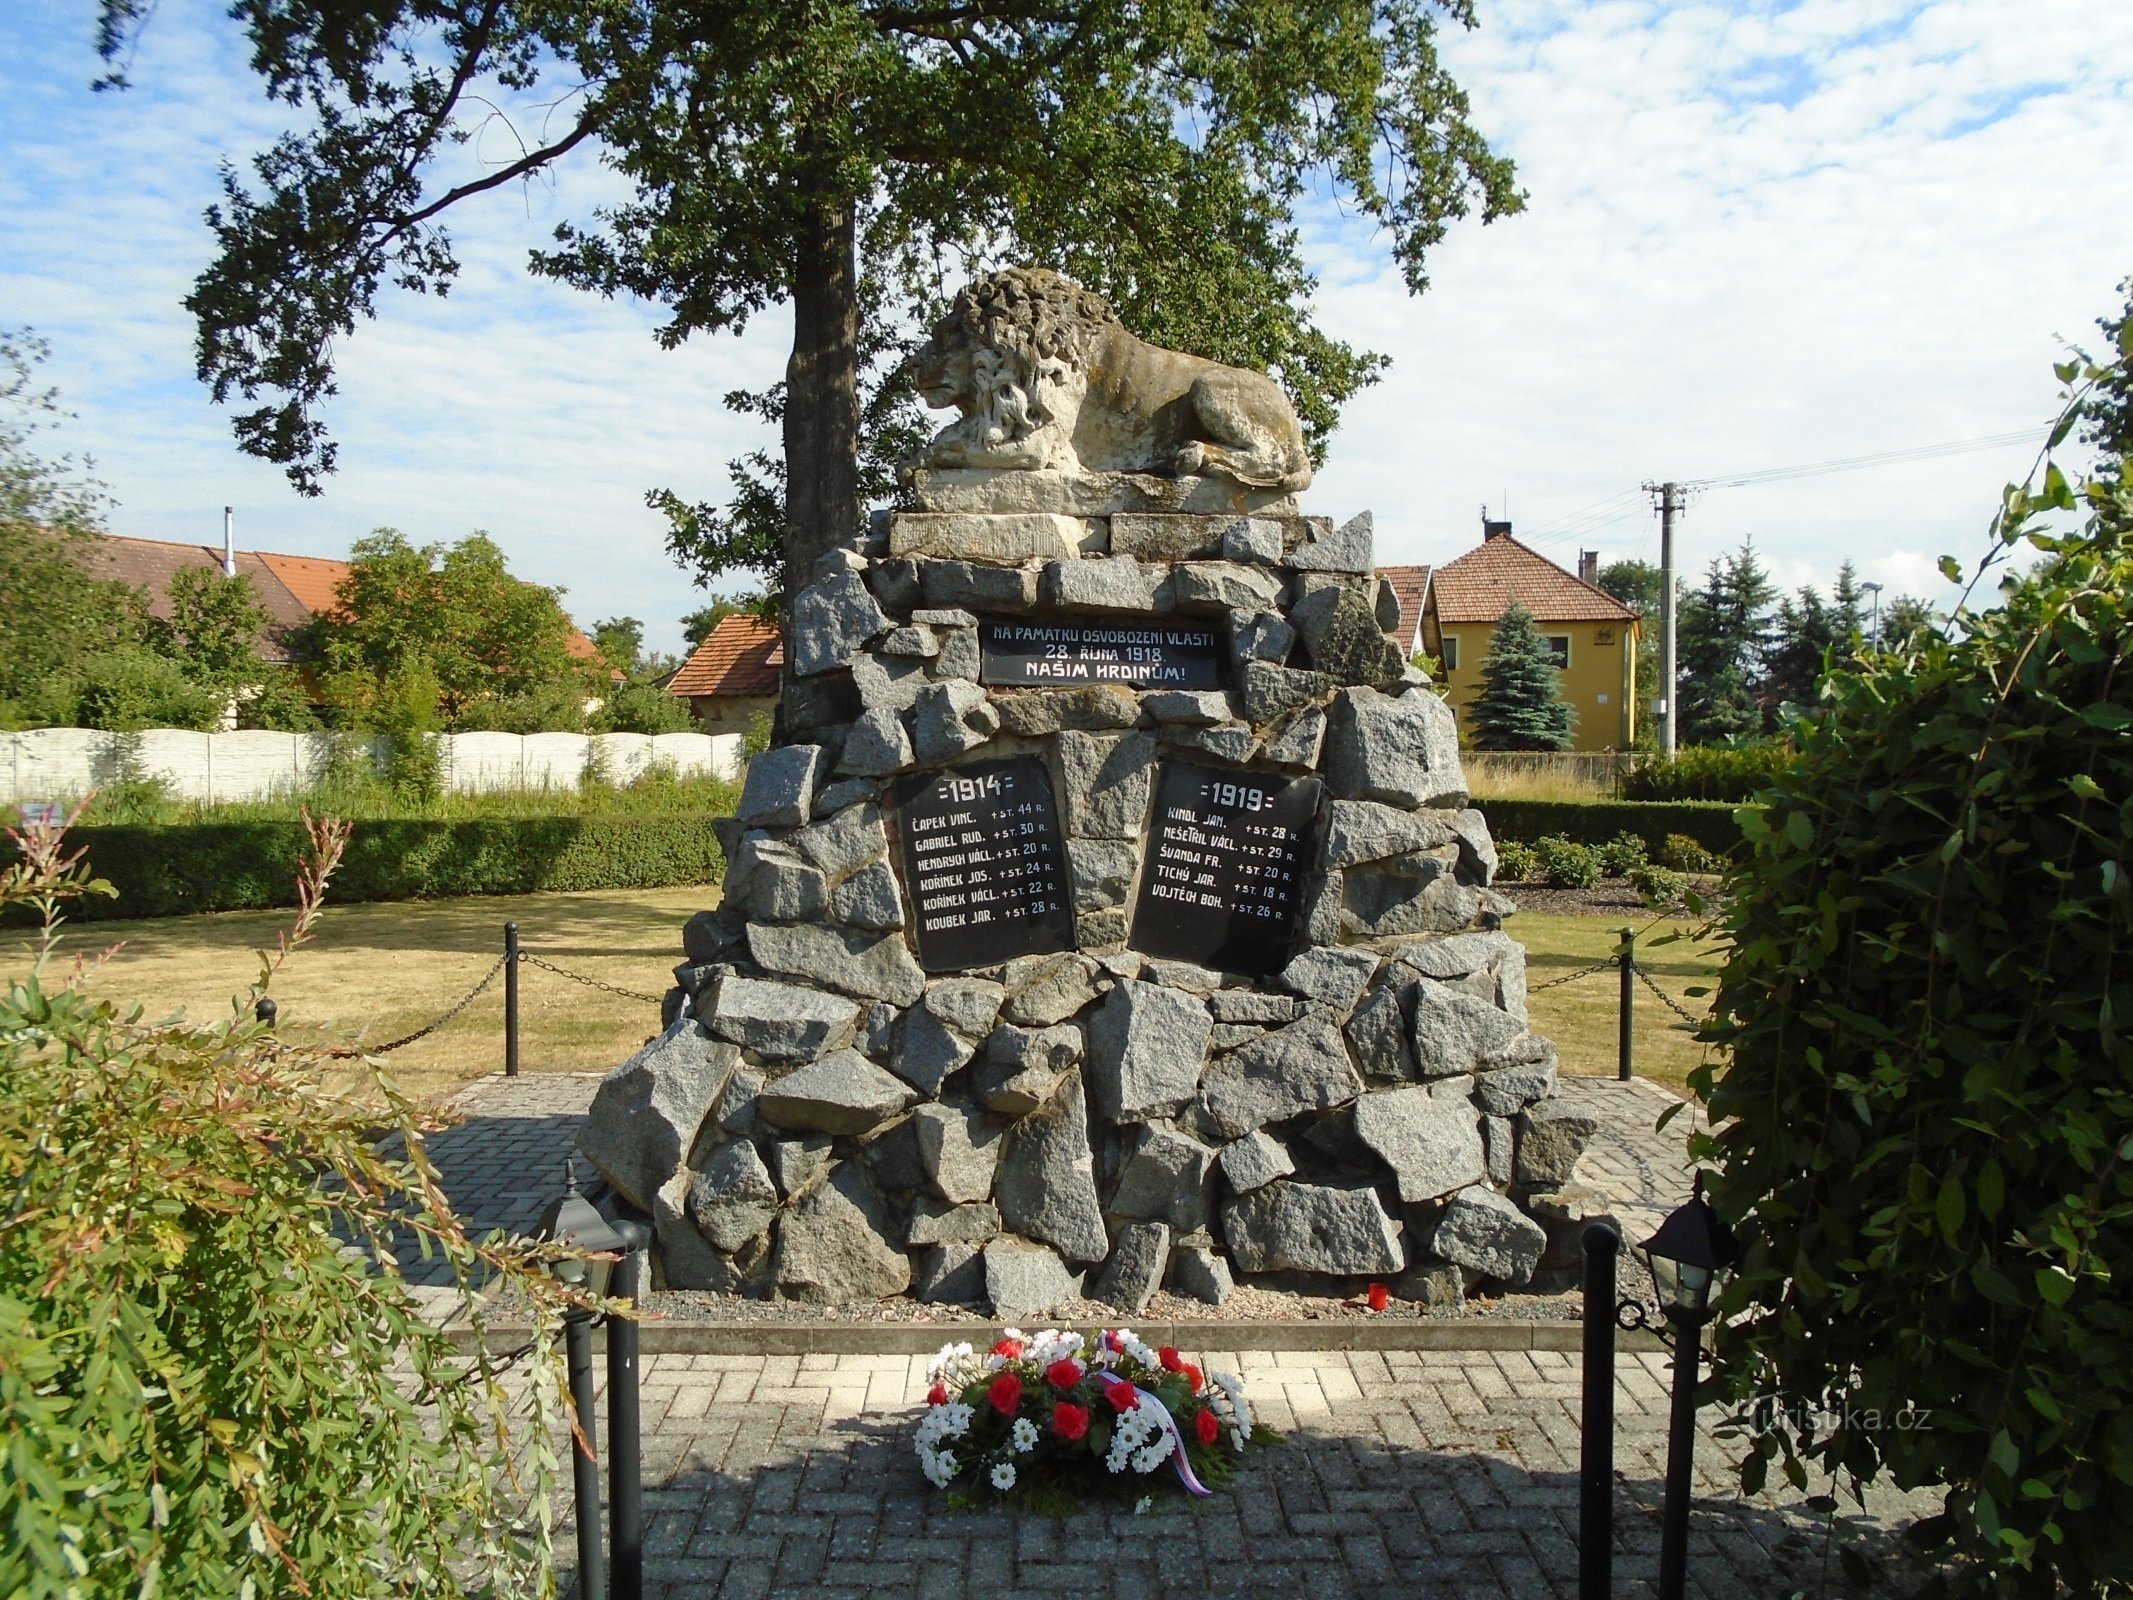 Đài tưởng niệm những người đã chết trong Chiến tranh thế giới thứ nhất (Choteč)